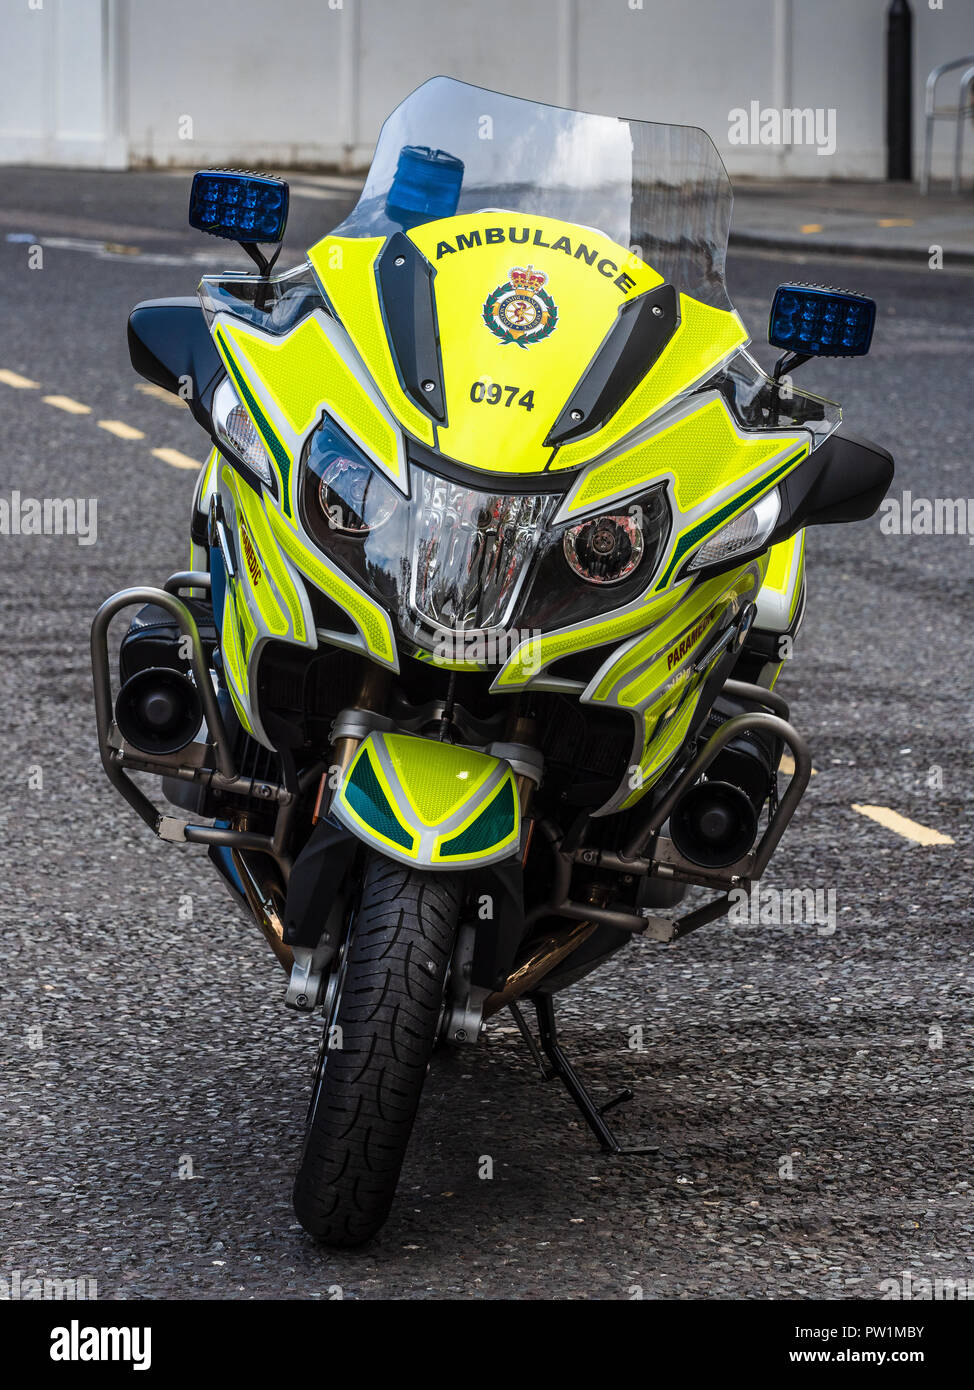 London Ambulance Service Moto moto garée aucun coureur Banque D'Images